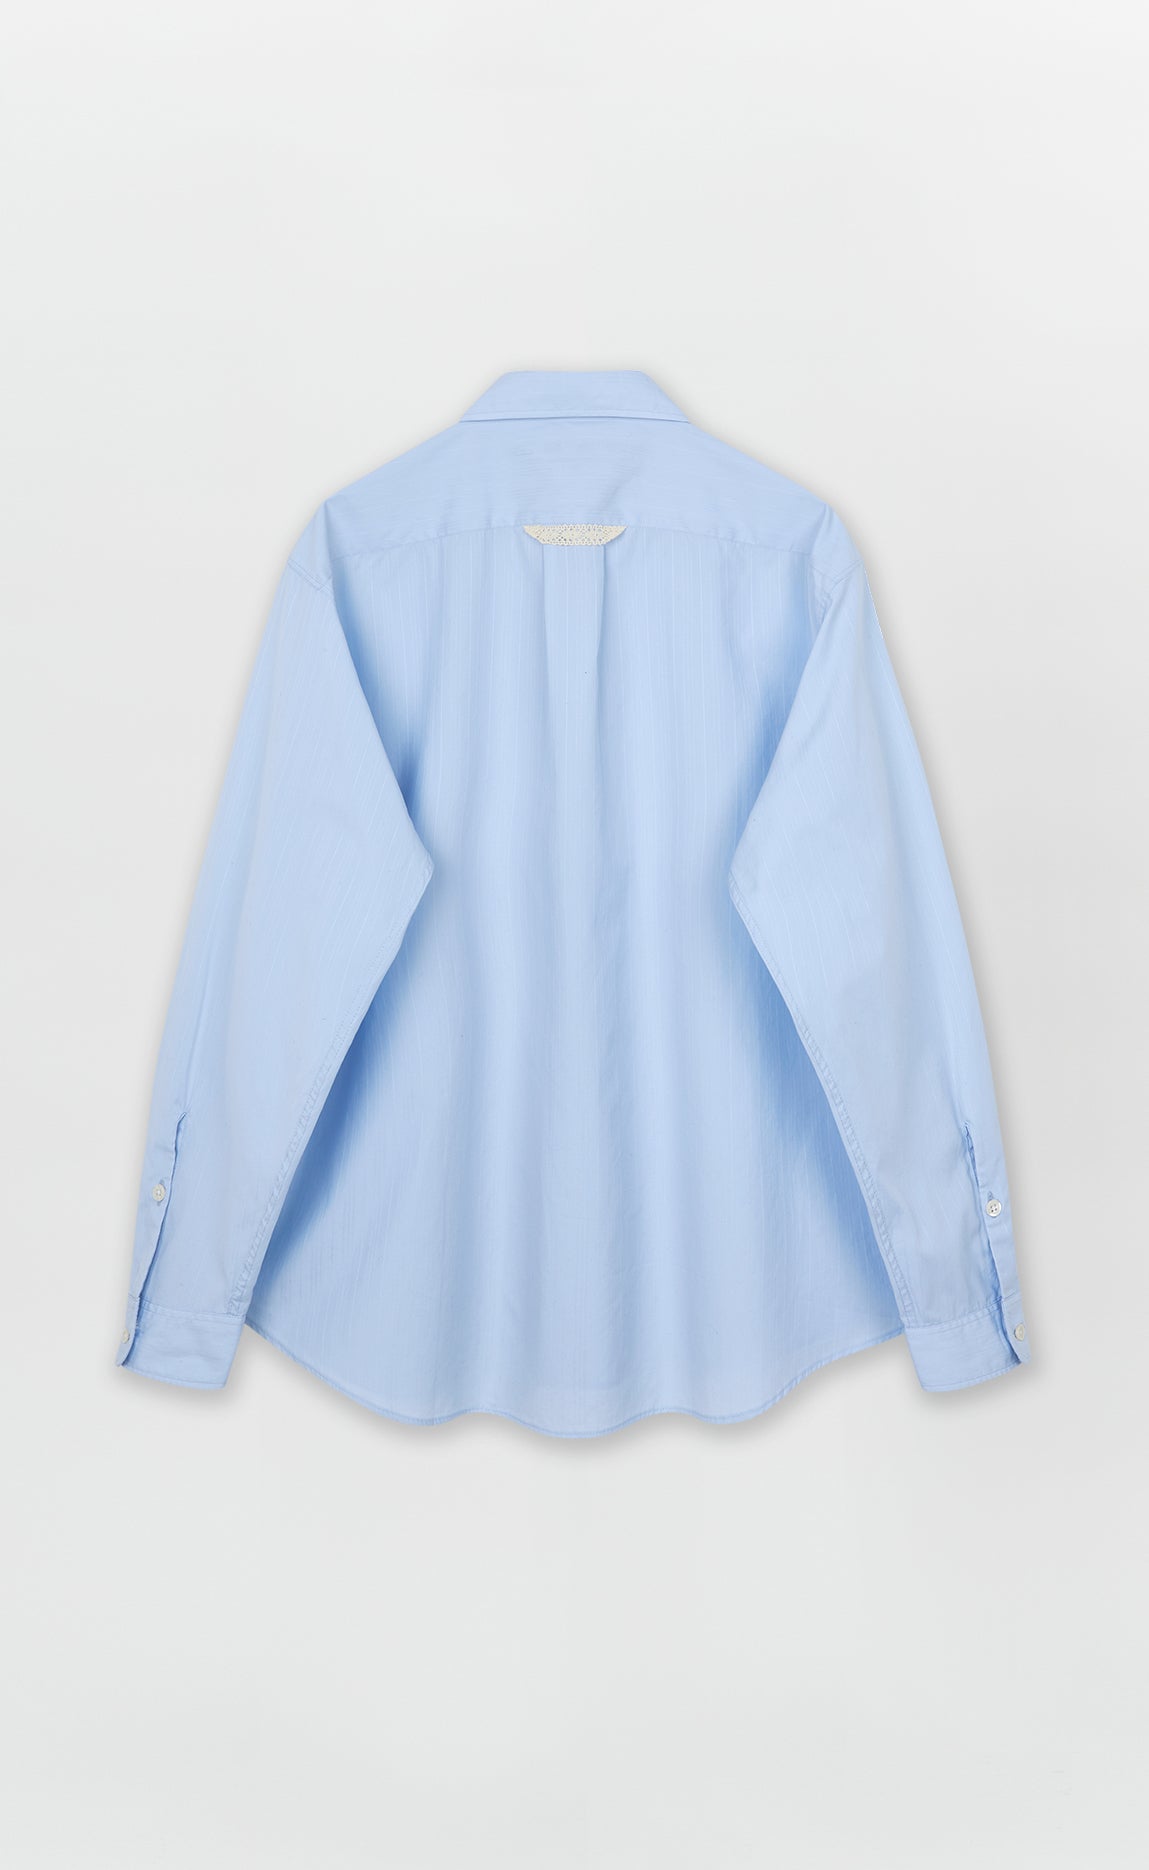 Tendency Shirt - Light Blue Stripe